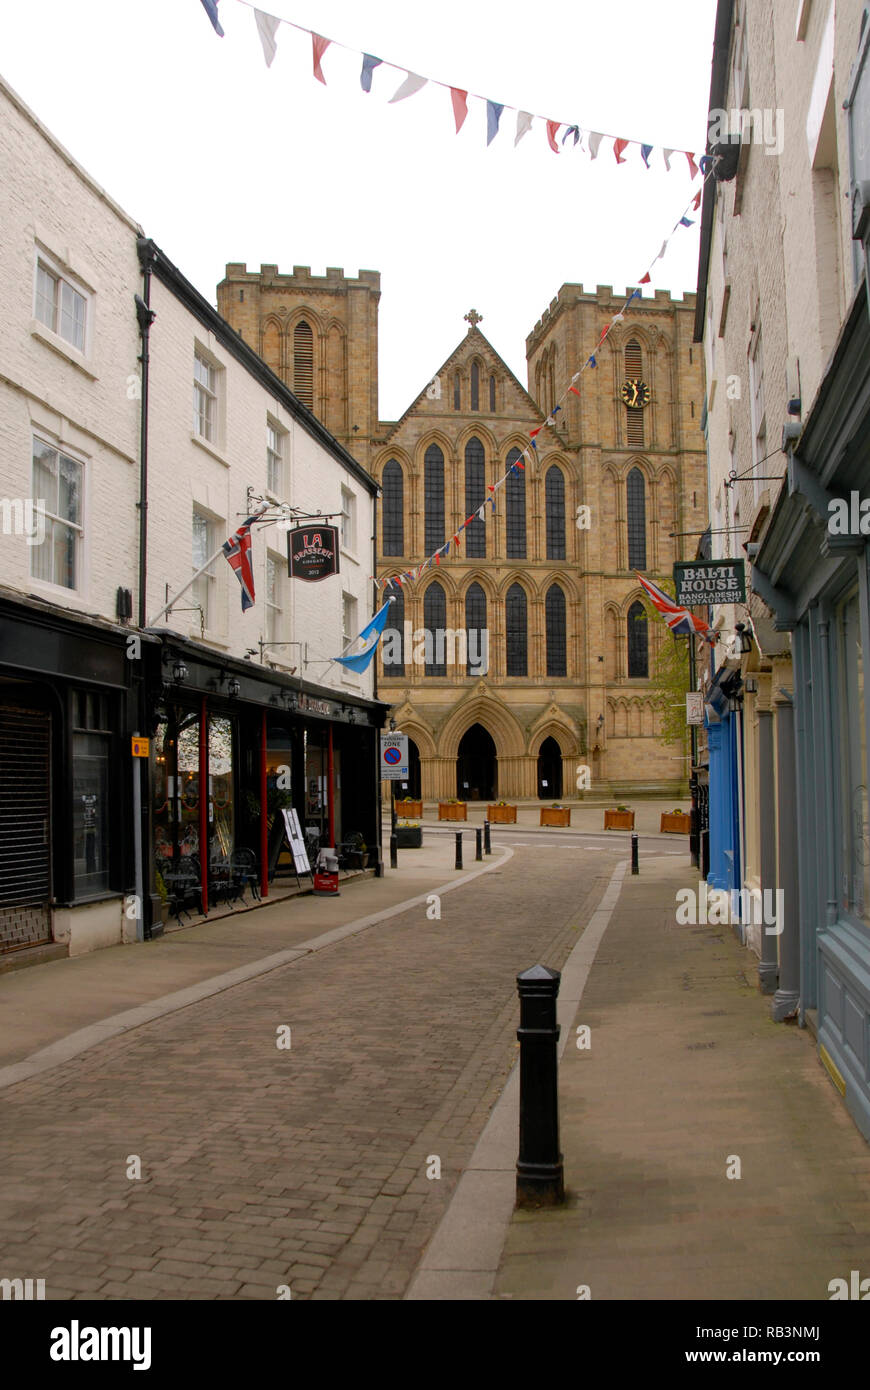 La cathédrale de Ripon, Ripon, Yorkshire, Angleterre Banque D'Images